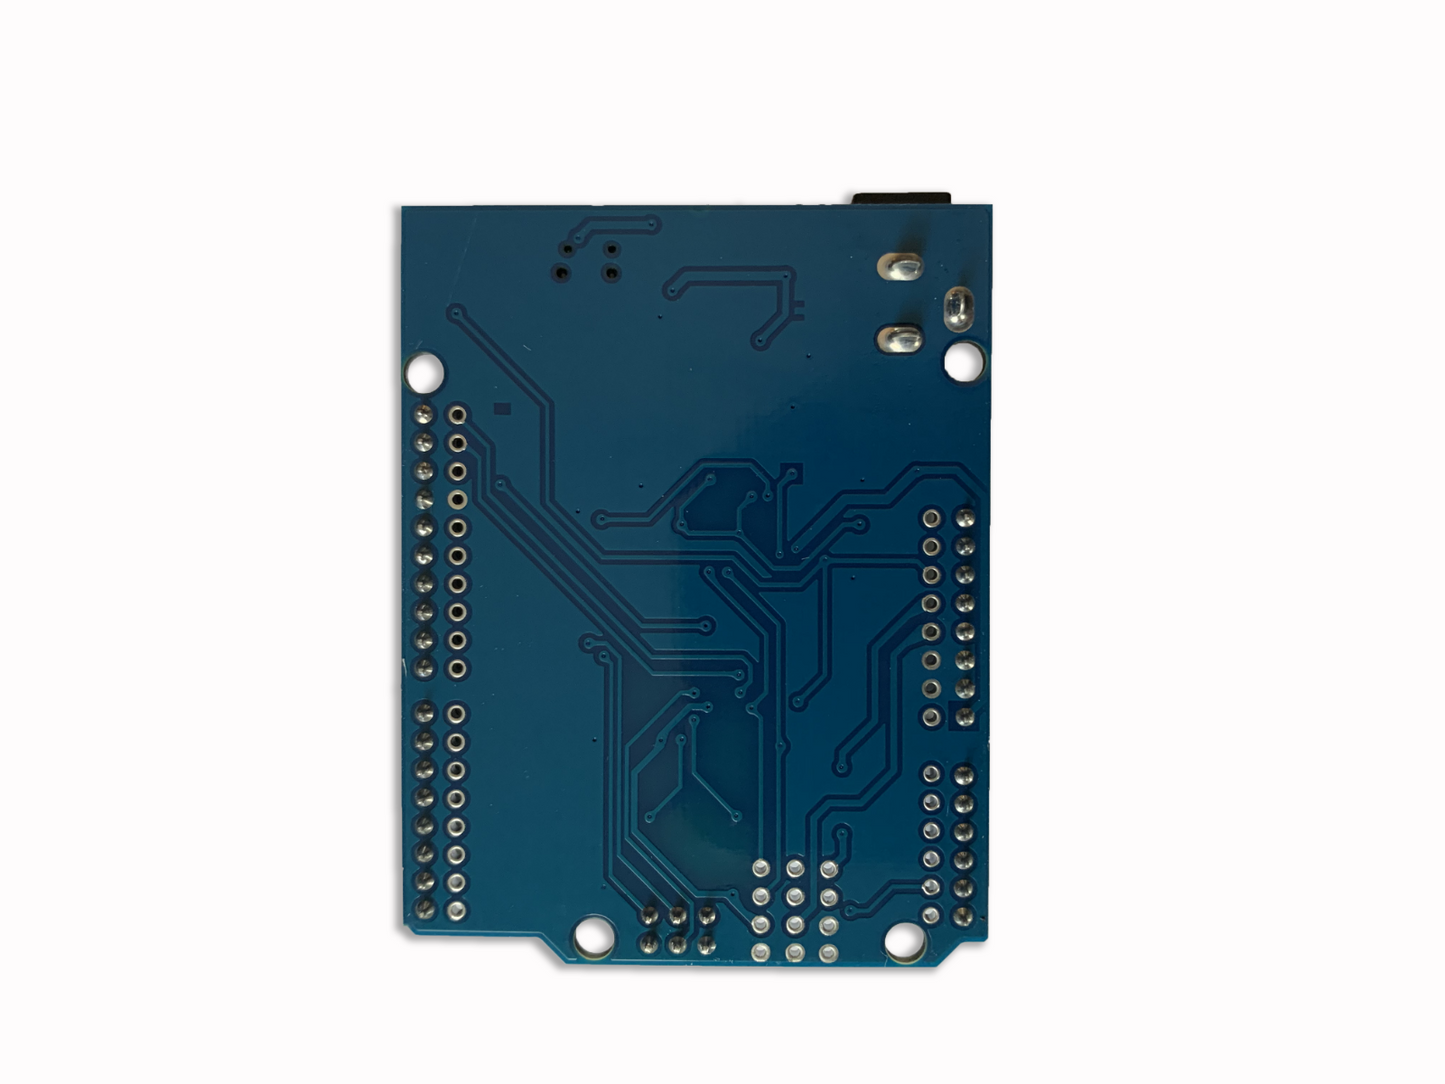 **3 units!**  ATmega328P CH340 Mini-USB Board compatible with Arduino UNO IDE